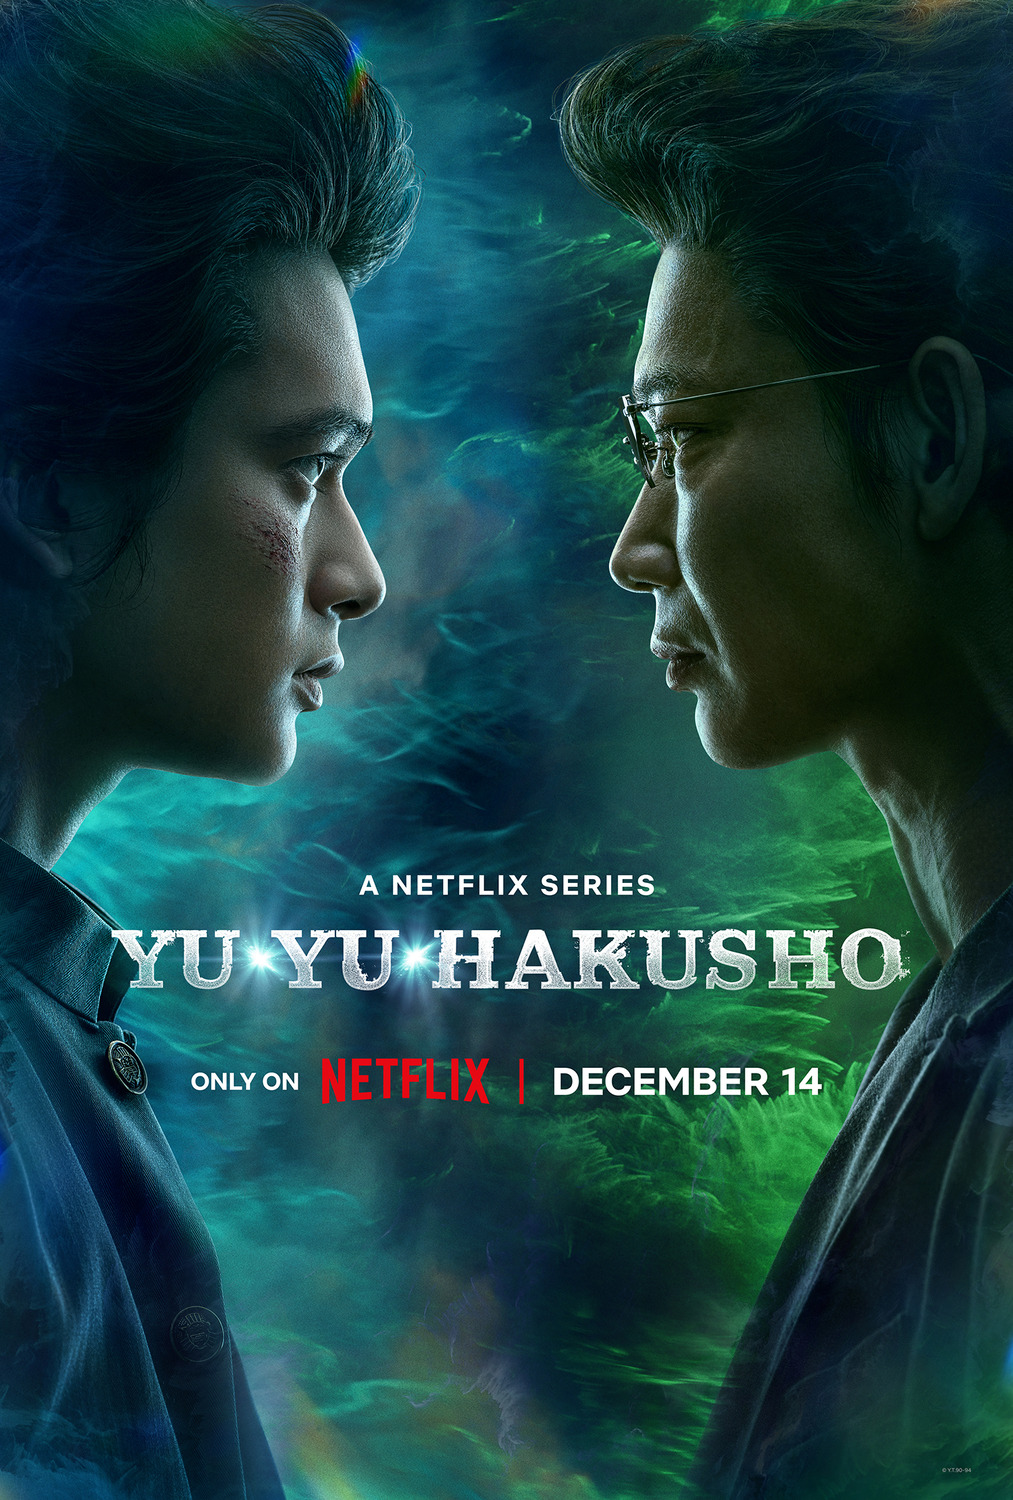 Extra Large TV Poster Image for Yu yu hakusho (#11 of 20)